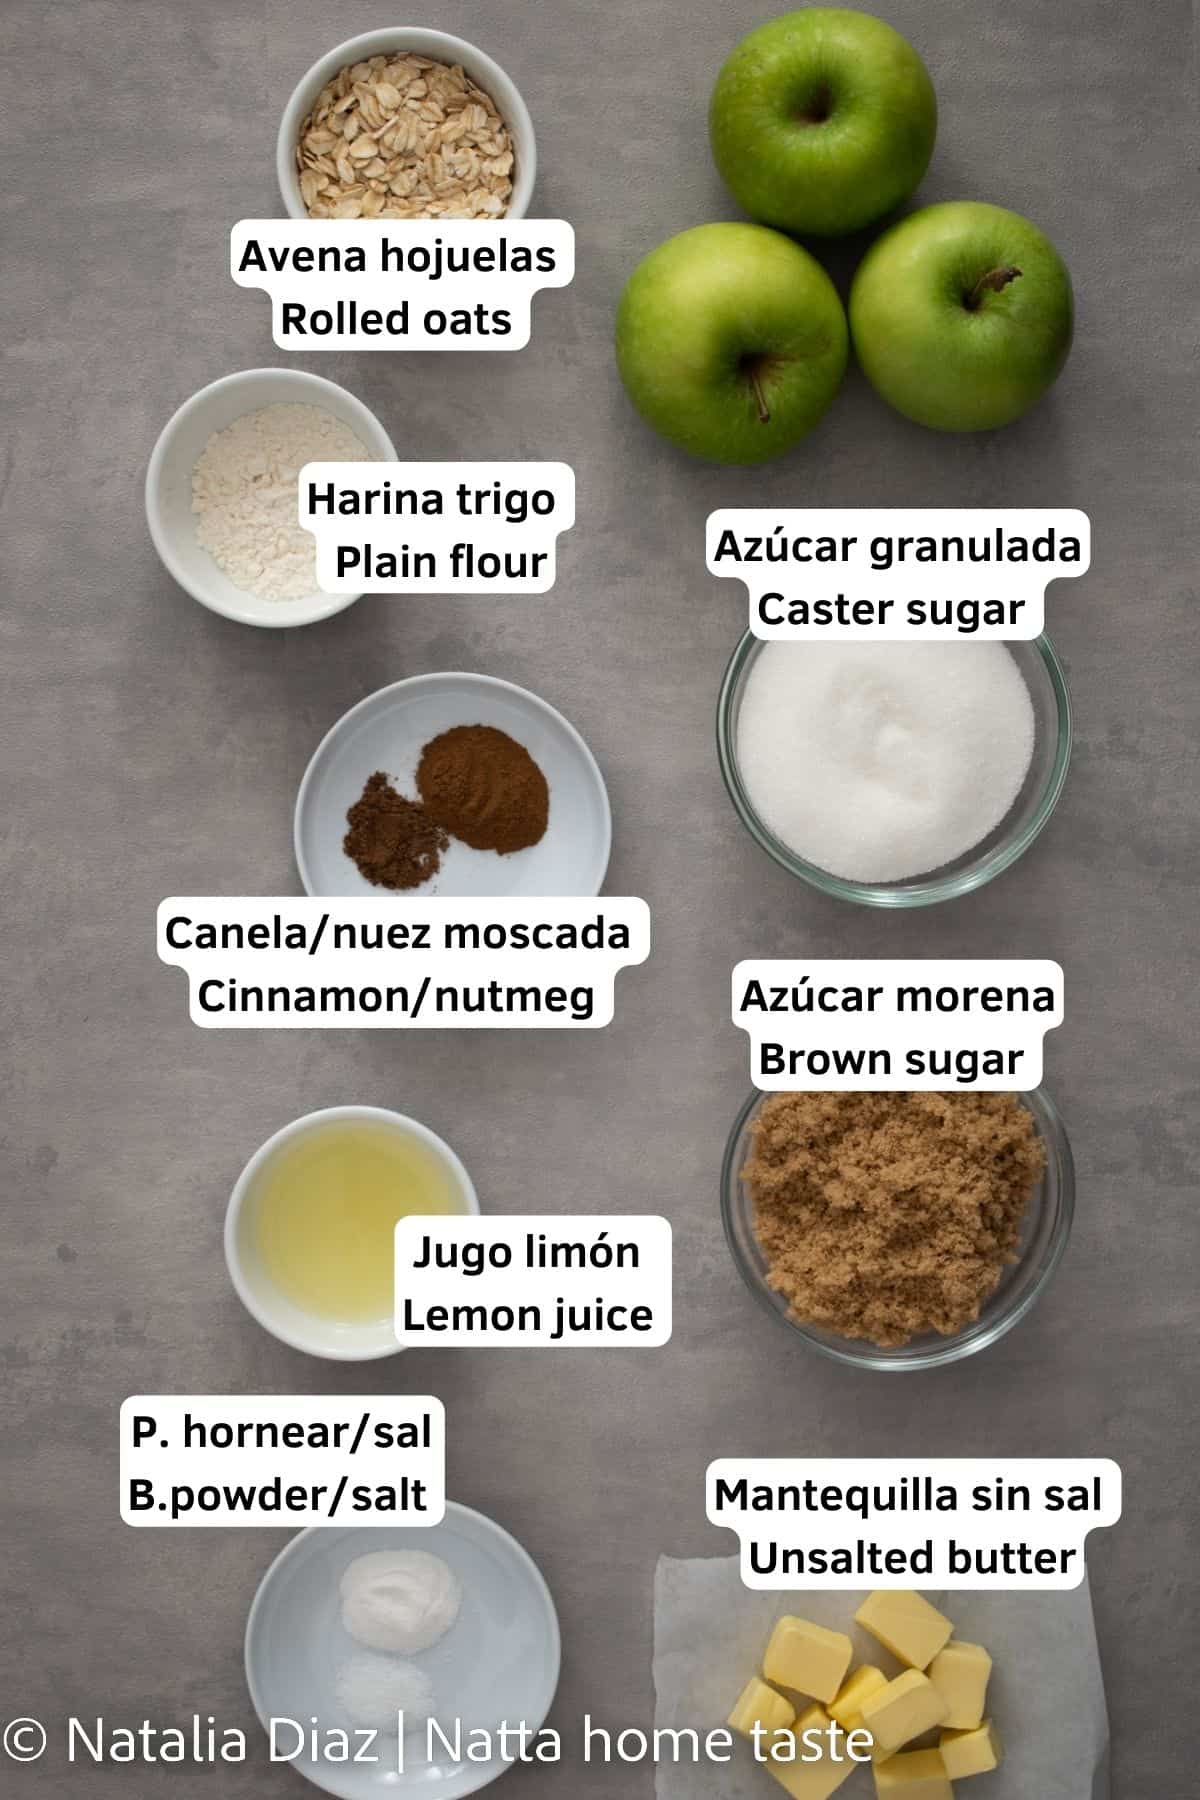 Ingredientes para preparar una receta de crumble de manzana. Copos de avena, manzanas verdes, harina de trigo, azúcar granulada, canela, nuez moscada, azúcar moreno, jugo de limón, mantequilla en cubos, sal. 